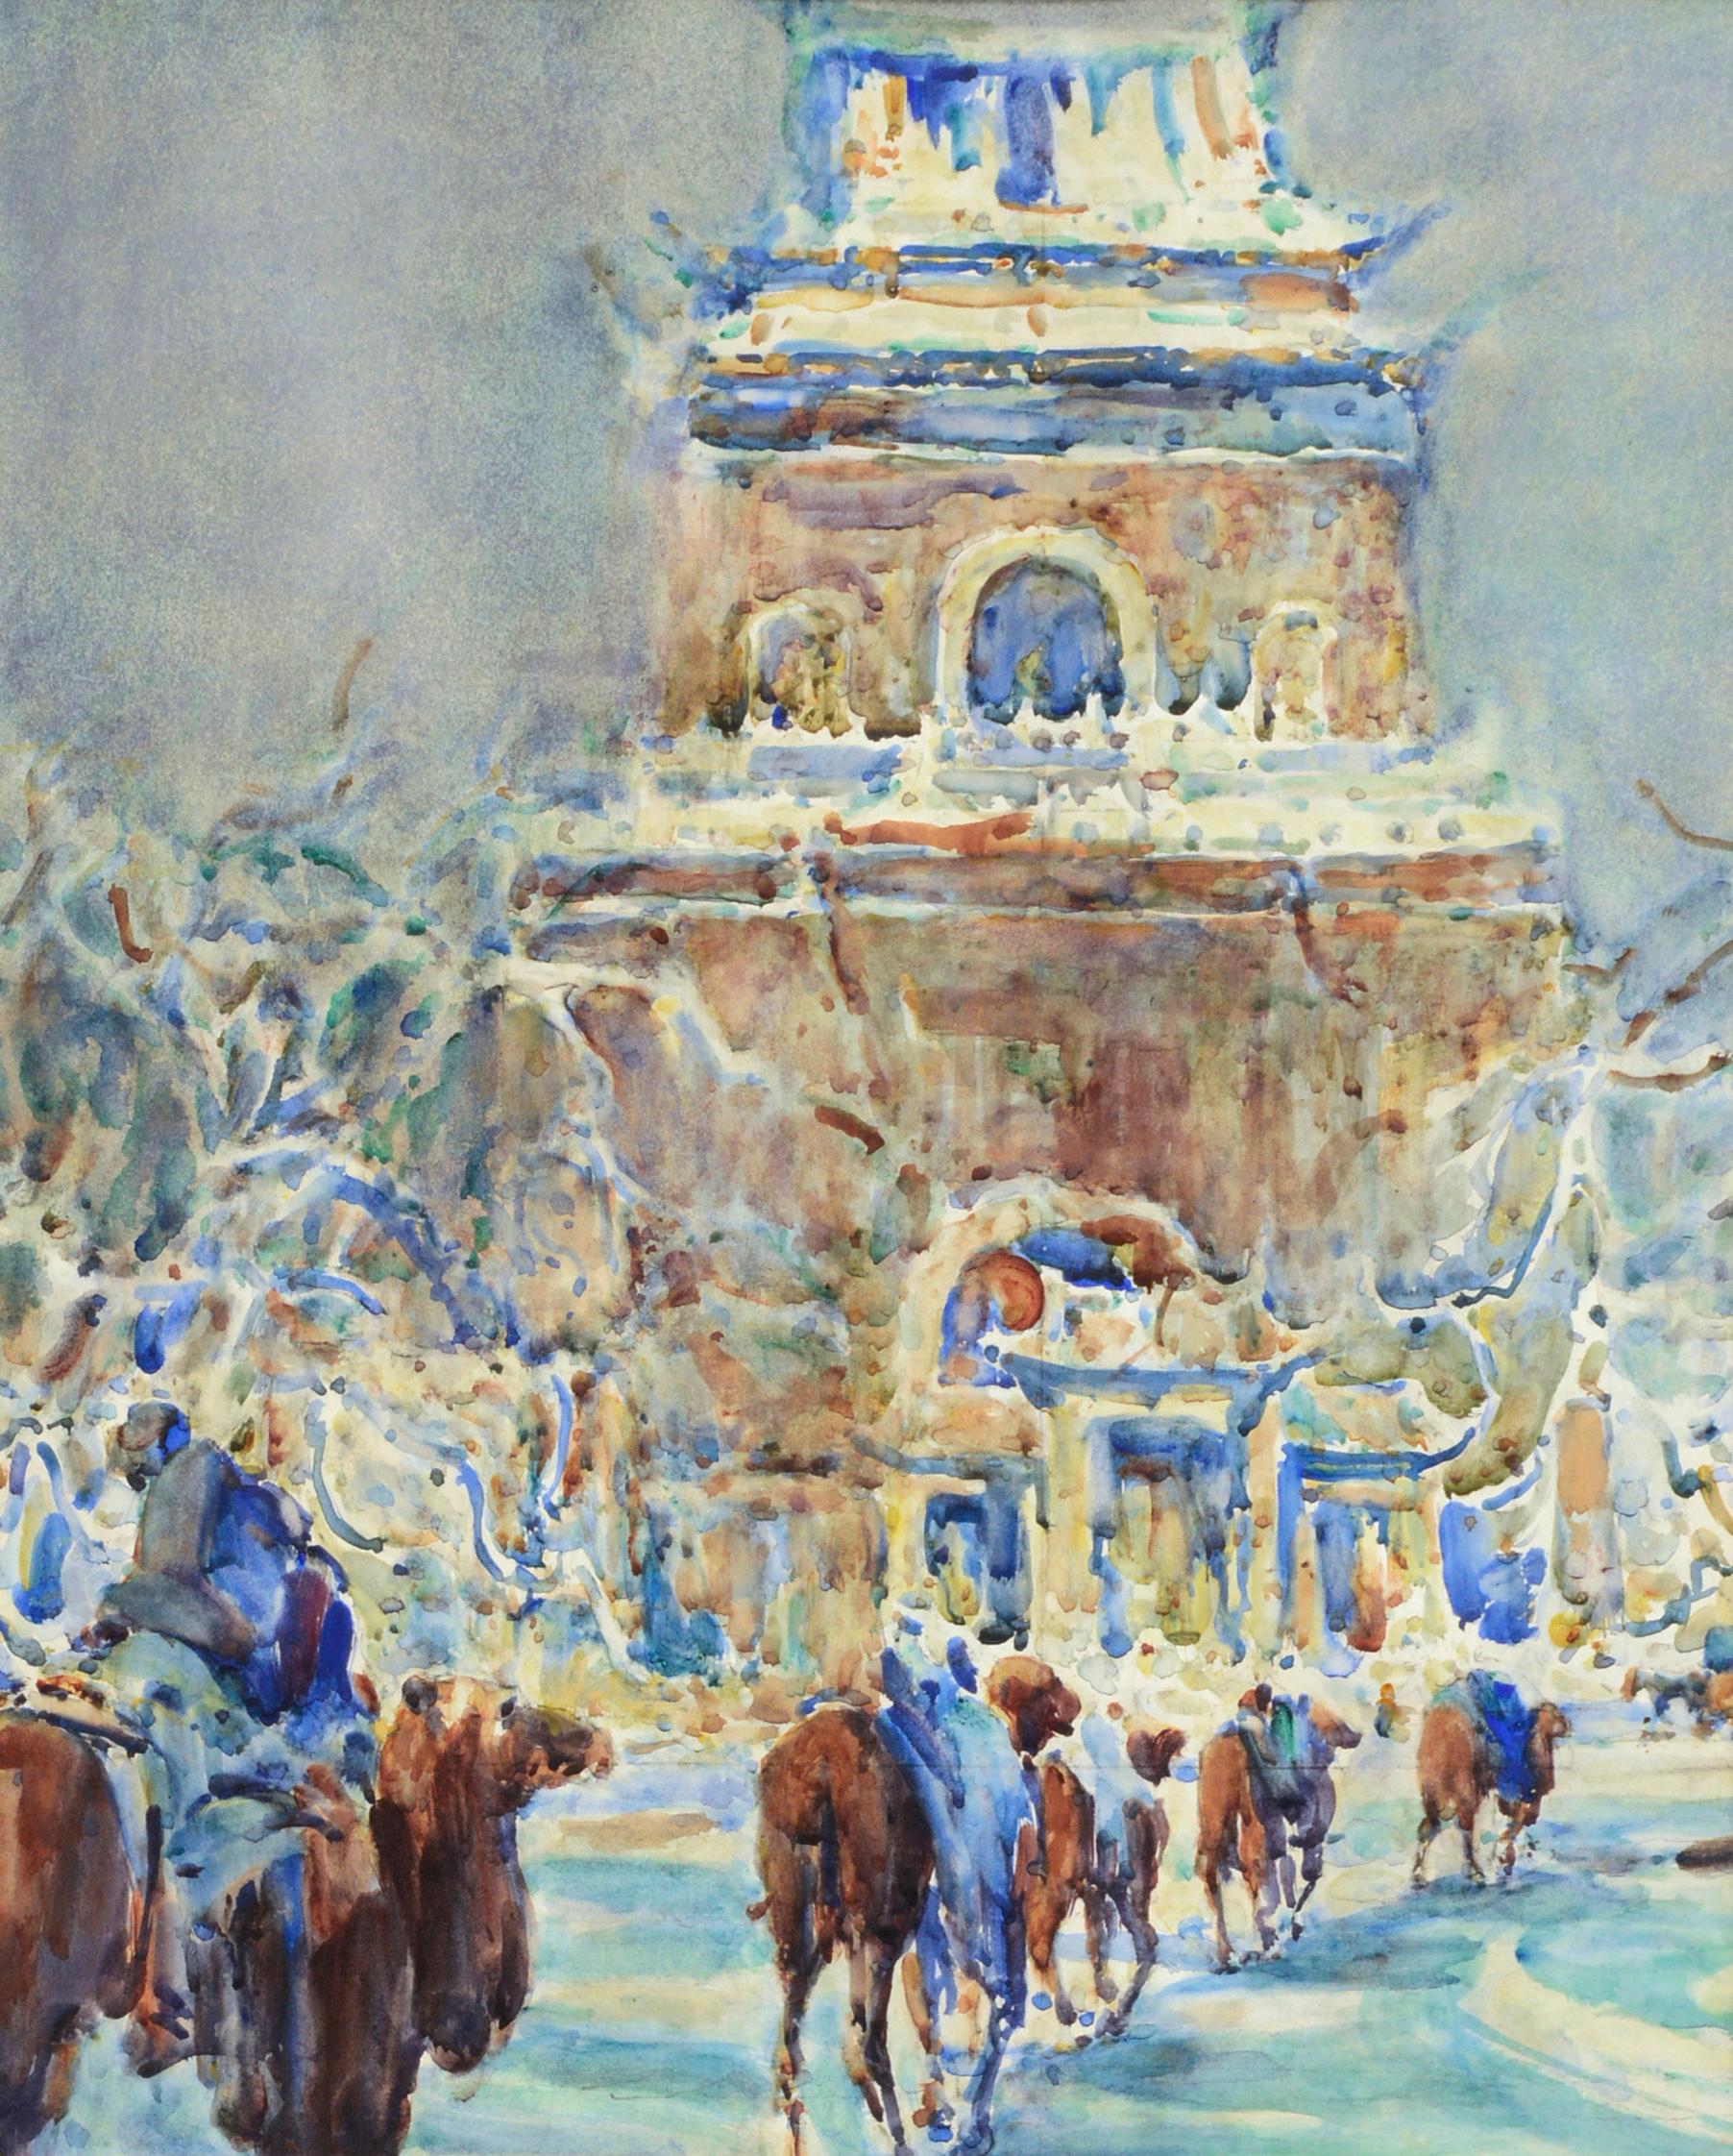 Pekinger Glockenturm des frühen 20. Jahrhunderts  (Amerikanischer Impressionismus), Art, von William Clothier Watts